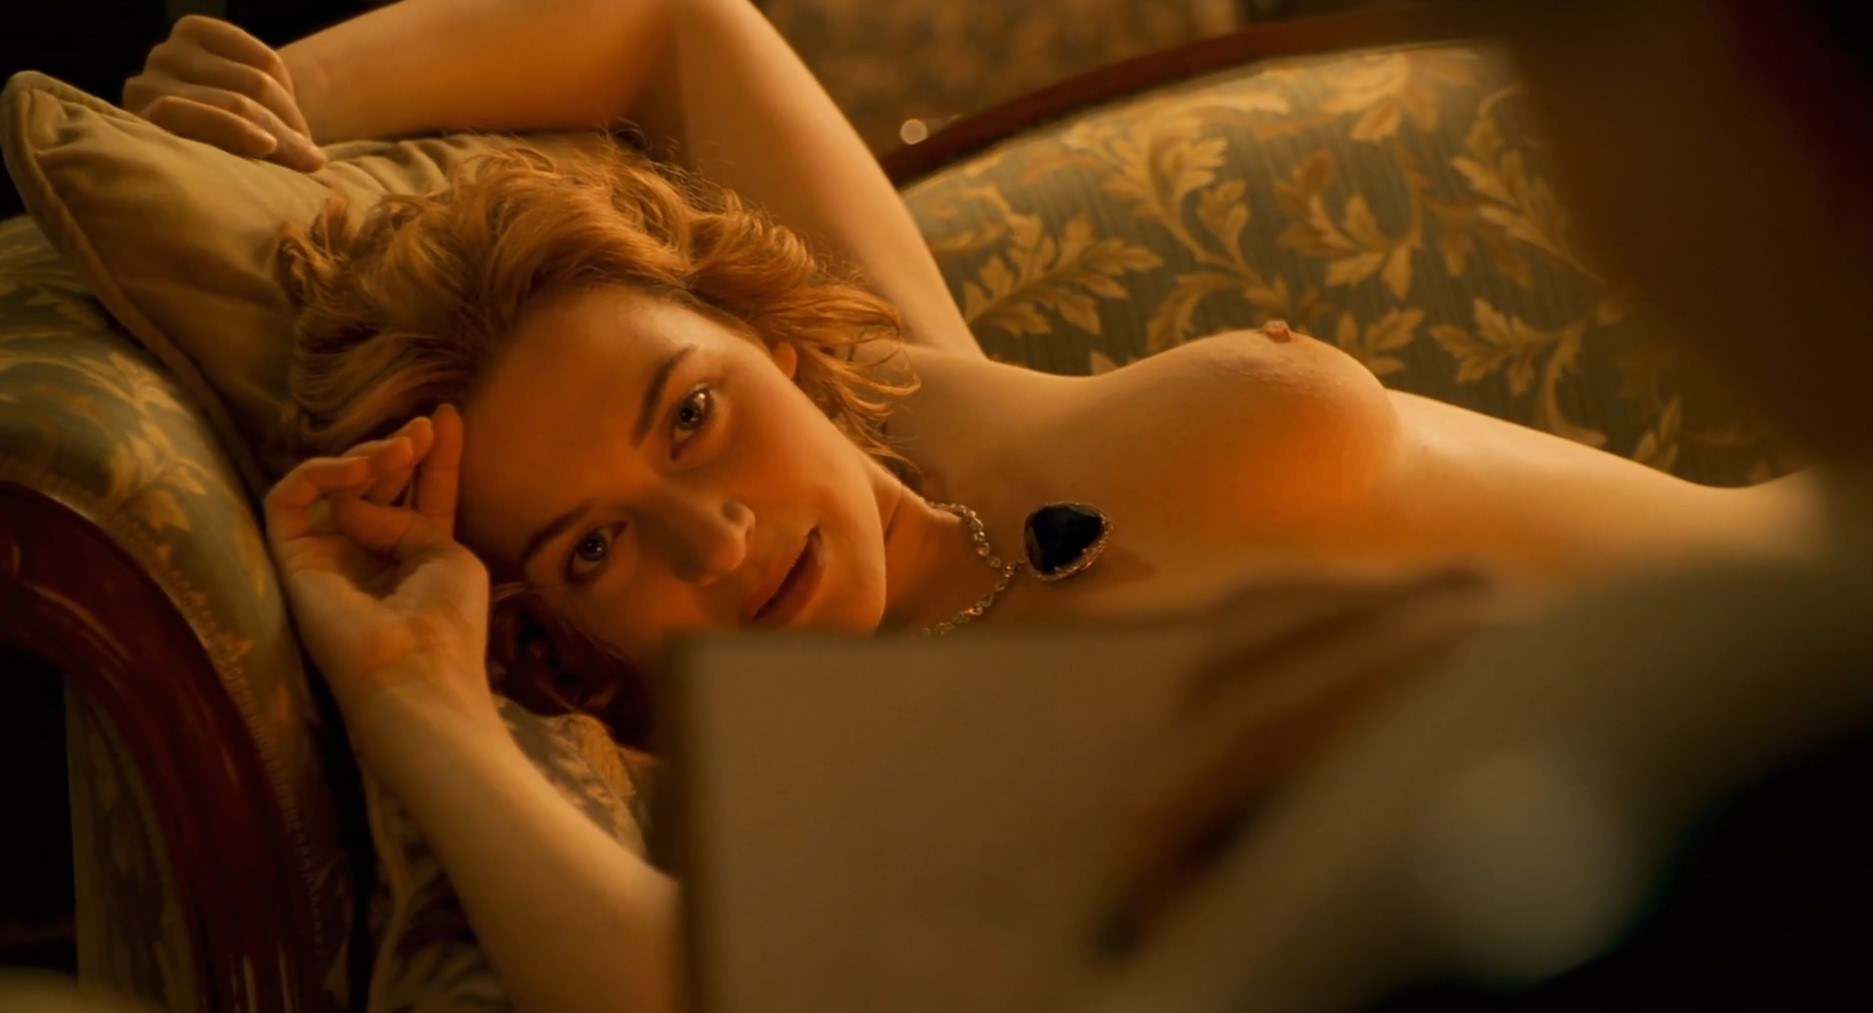 Слив фото Кейт Уинслет (Kate Winslet) из Титаника Википедия горячие интим фото